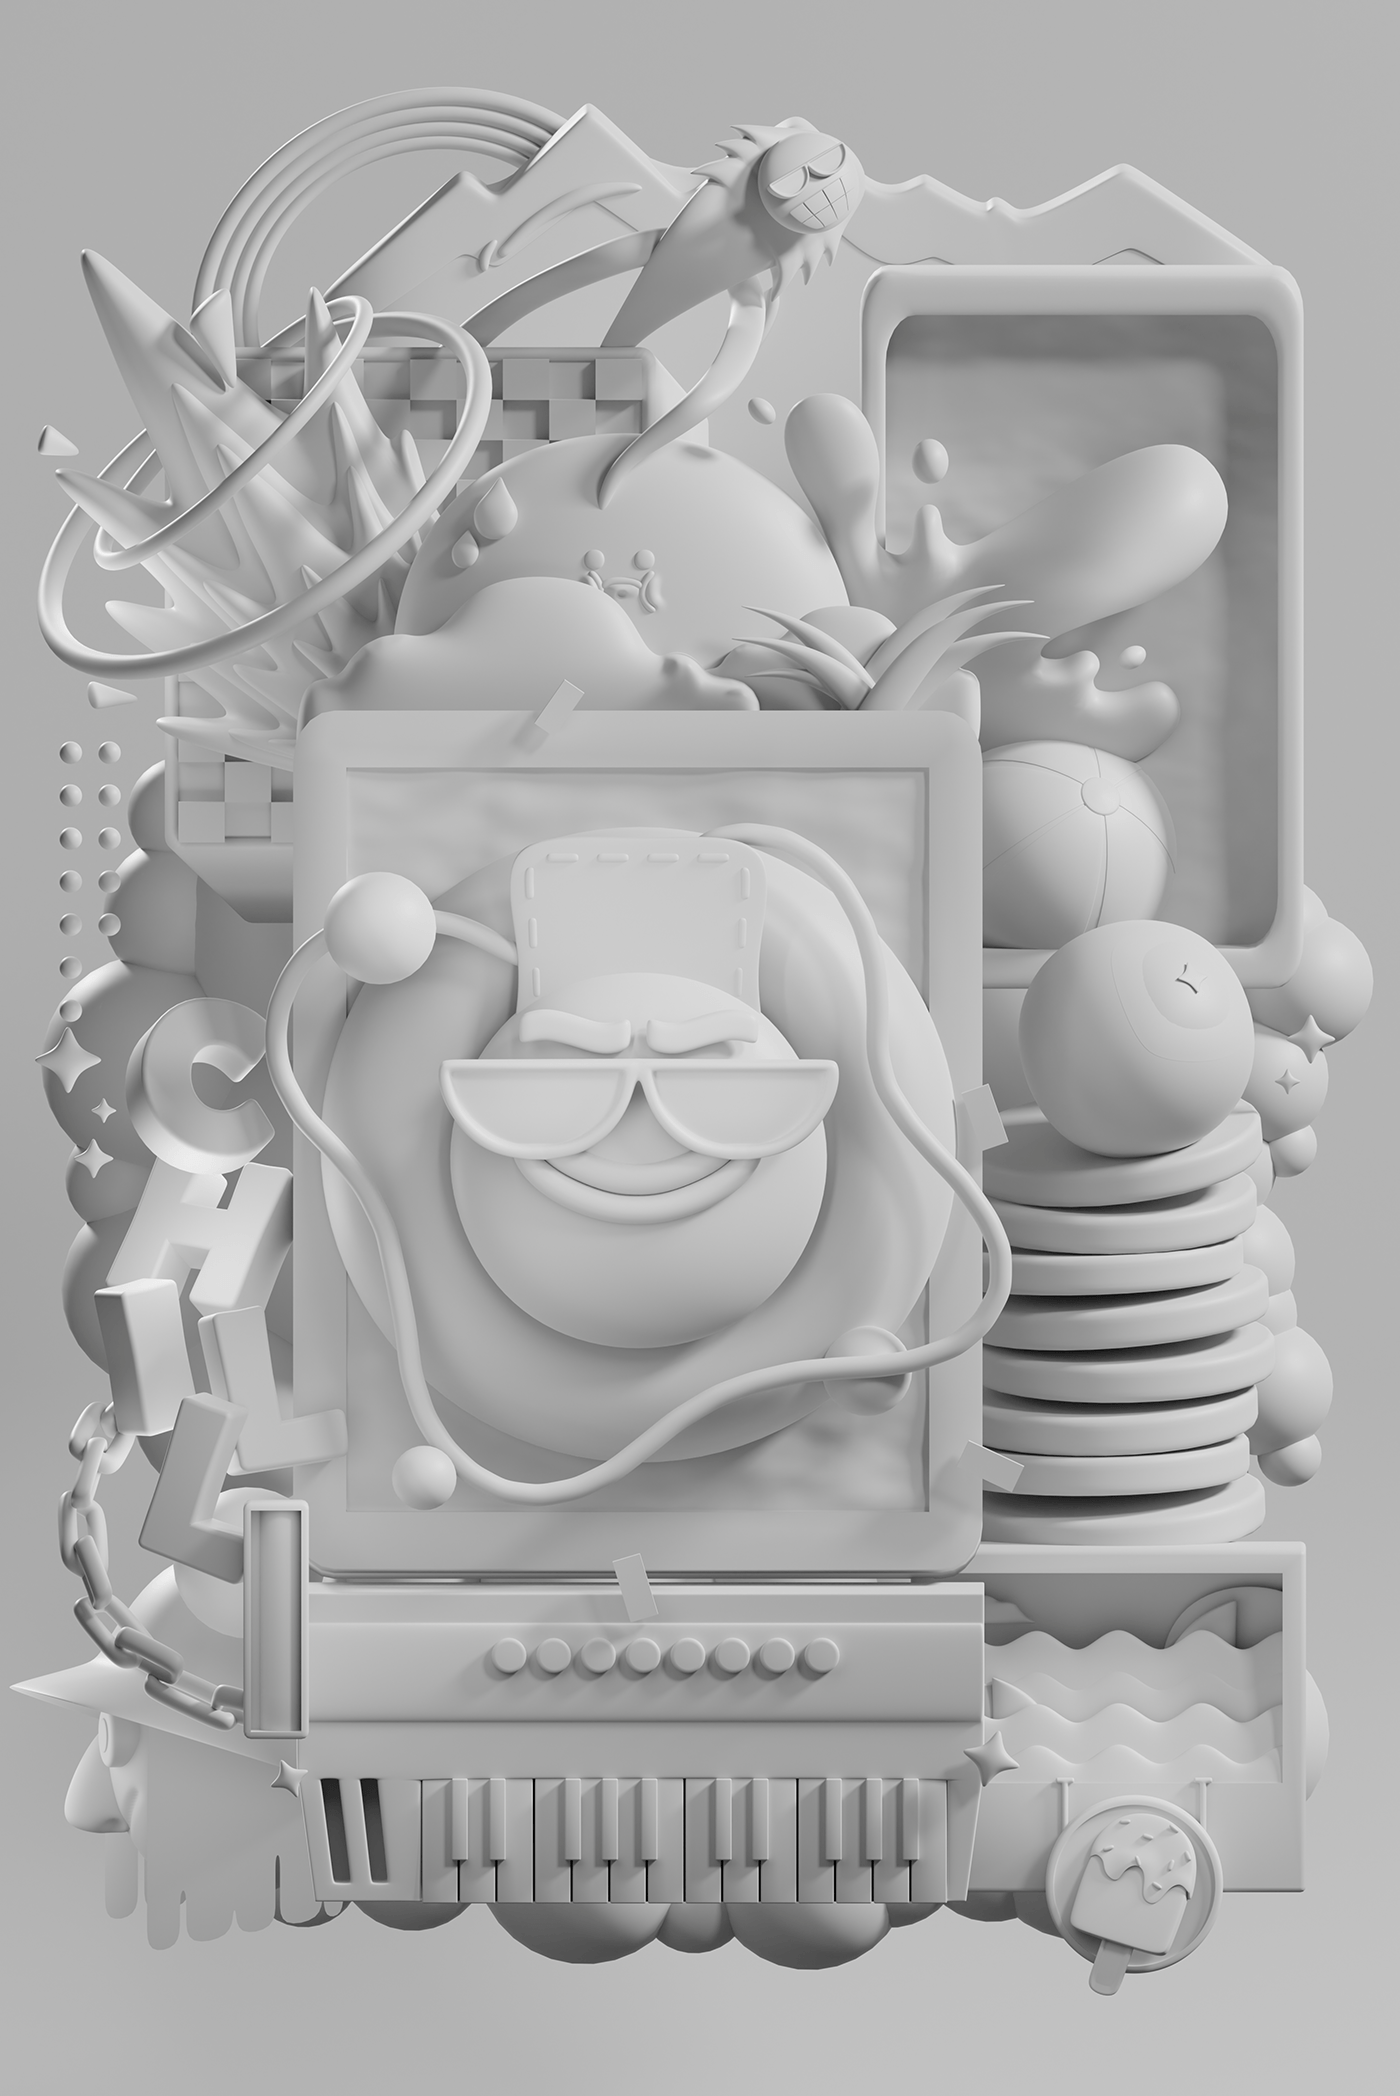 3D blender Digital Art  ILLUSTRATION  poster Character design  cartoon composition psychedelic 2д